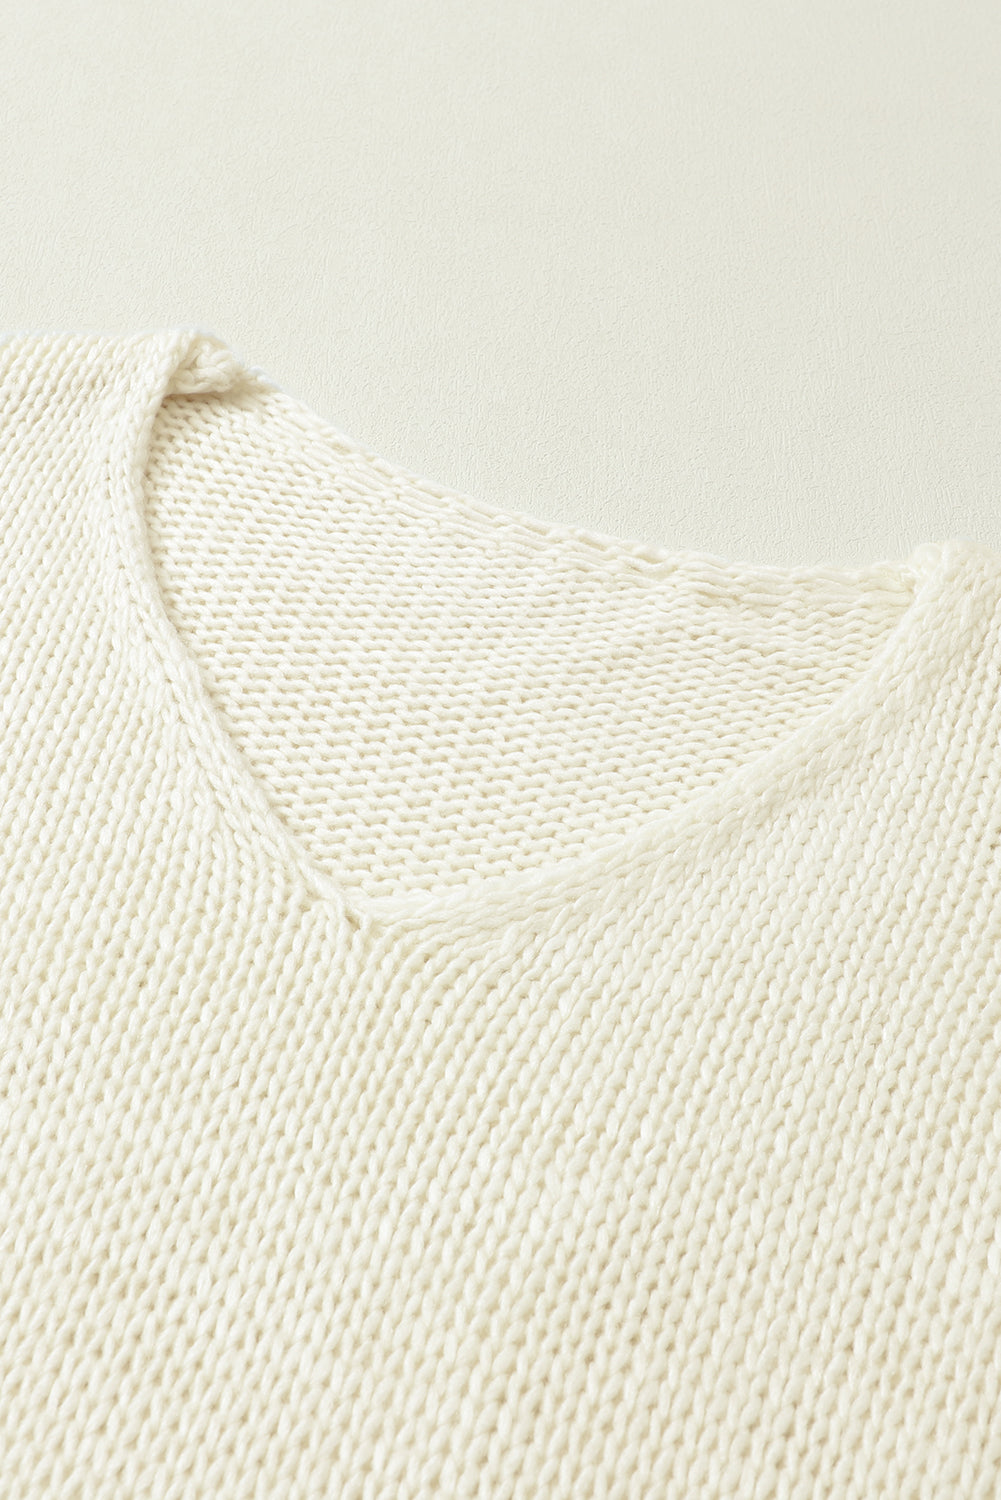 Široki pleteni džemper s V izrezom boje marelice